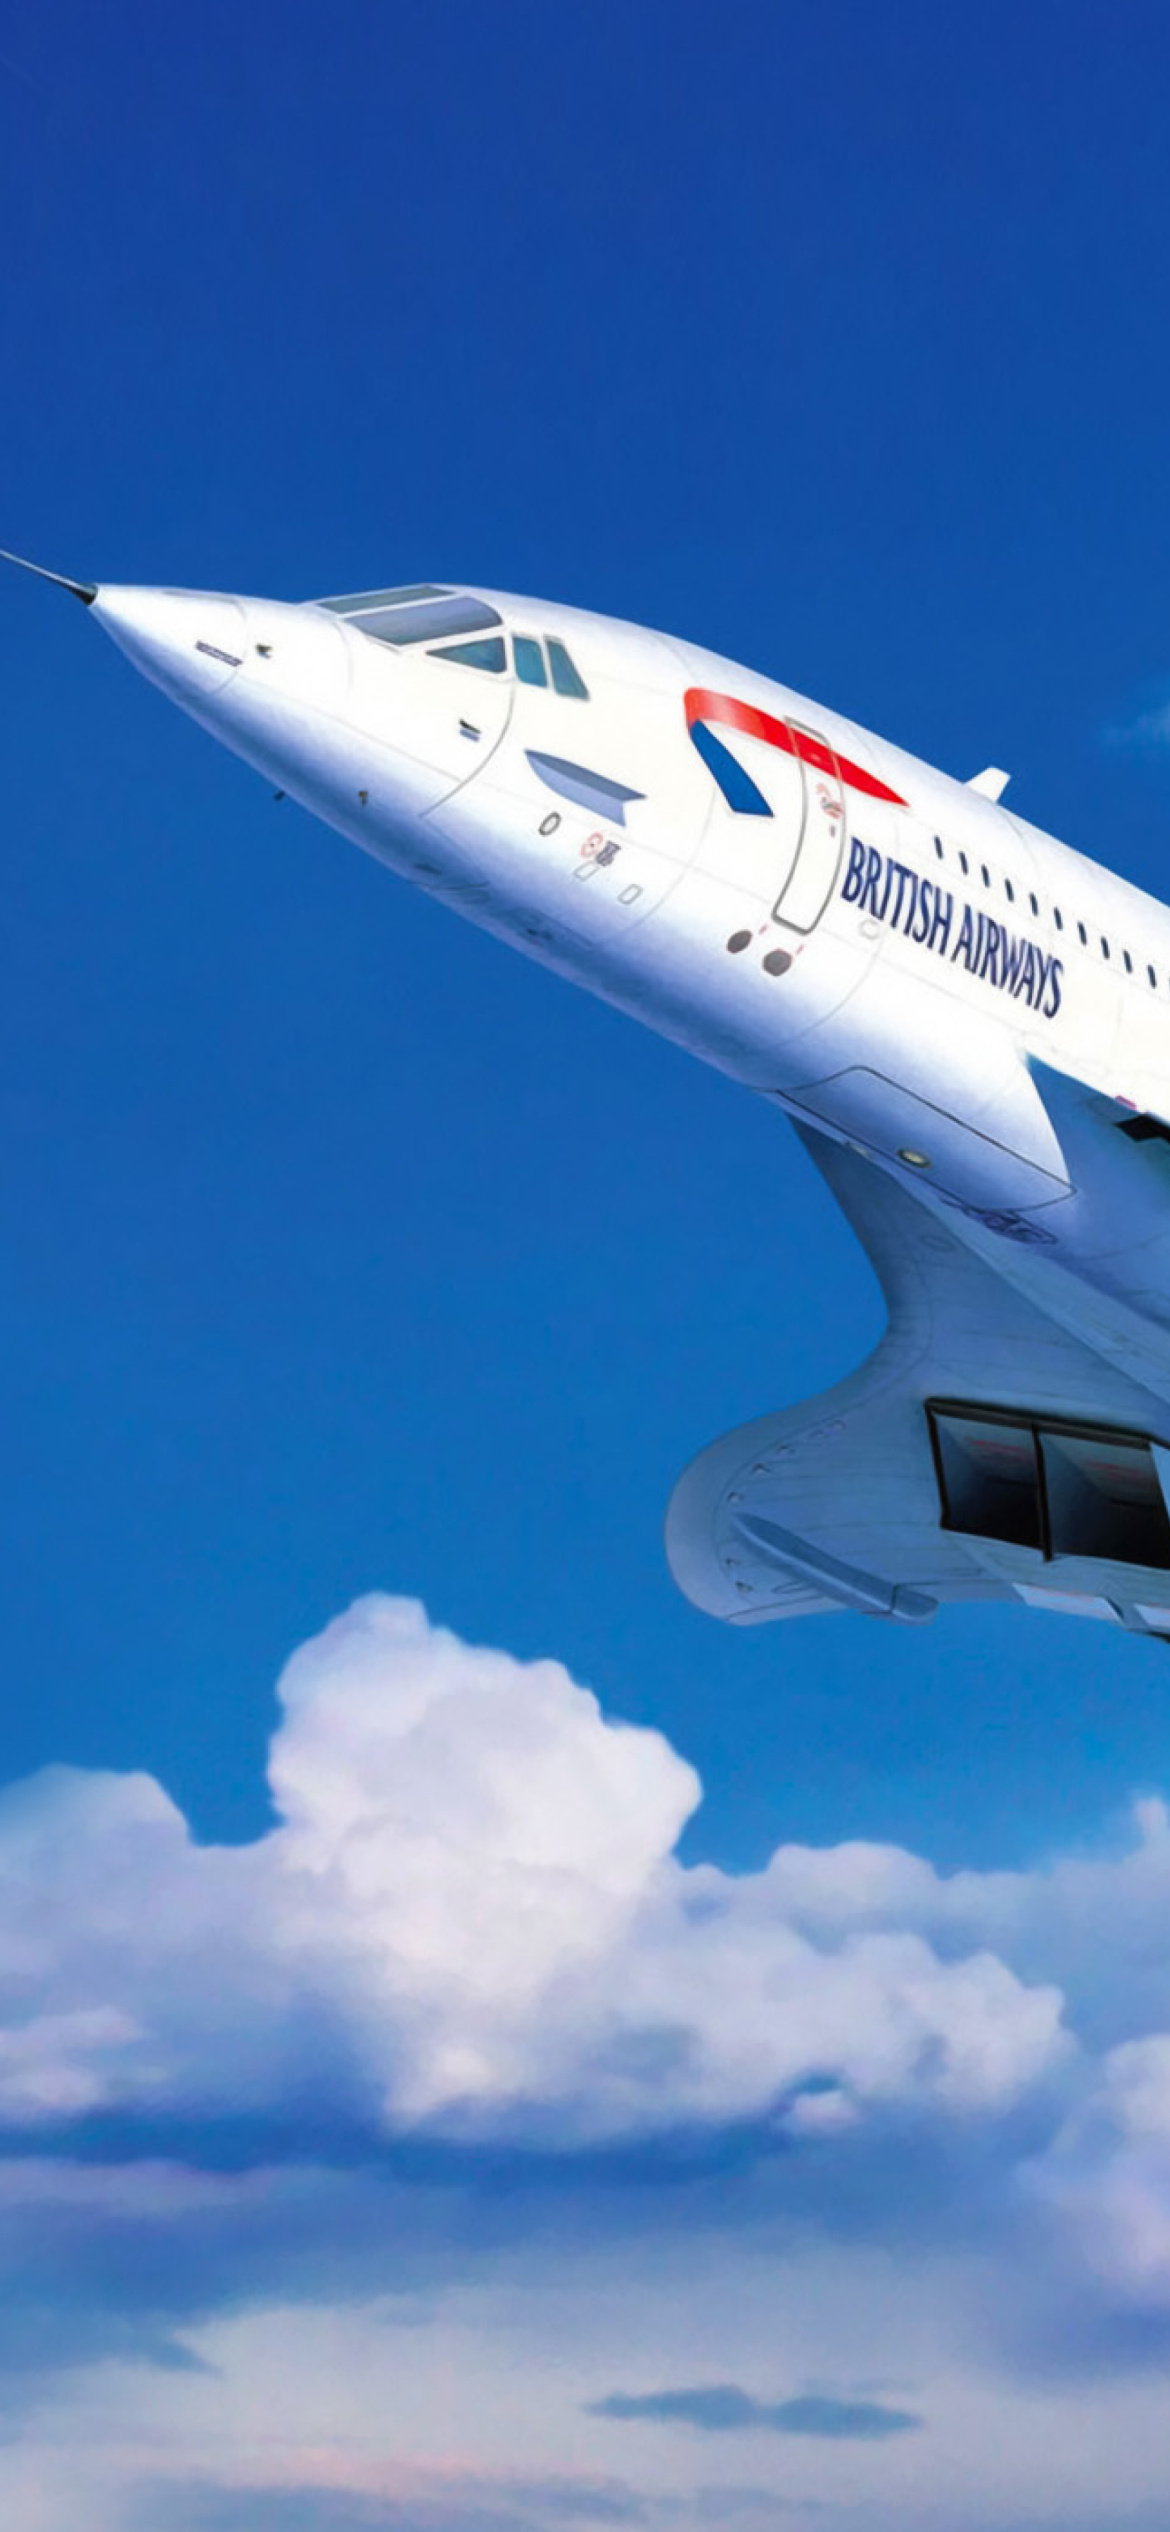 Concorde British Airways wallpaper 1170x2532